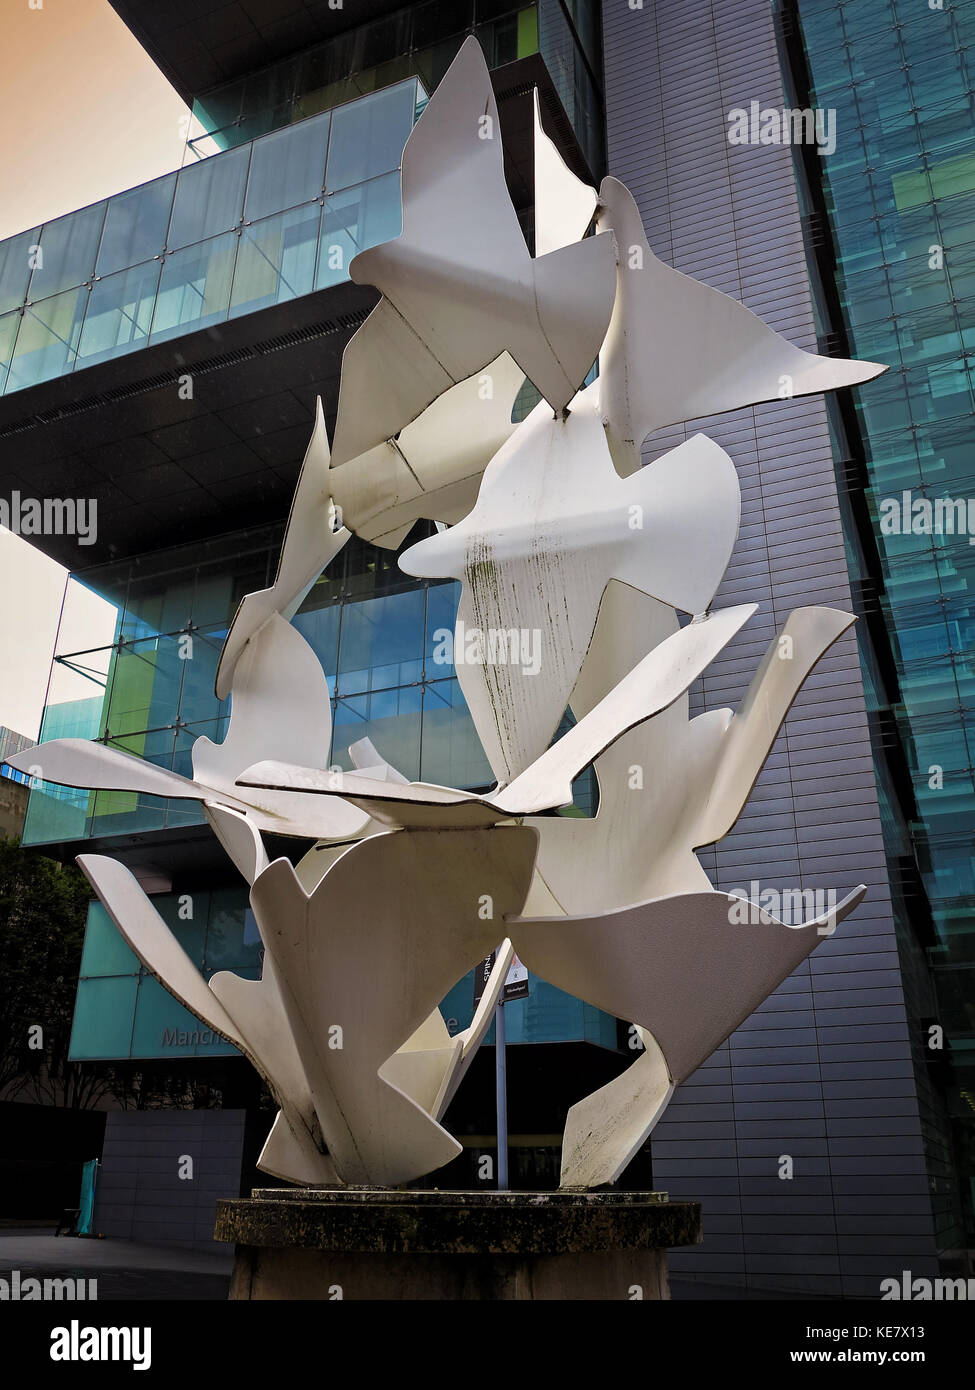 La complexité de la justice est symbolisée par cette juxtaposition des colombes de la paix et de la justice civile sculpture center de spinningfields, manchest Banque D'Images